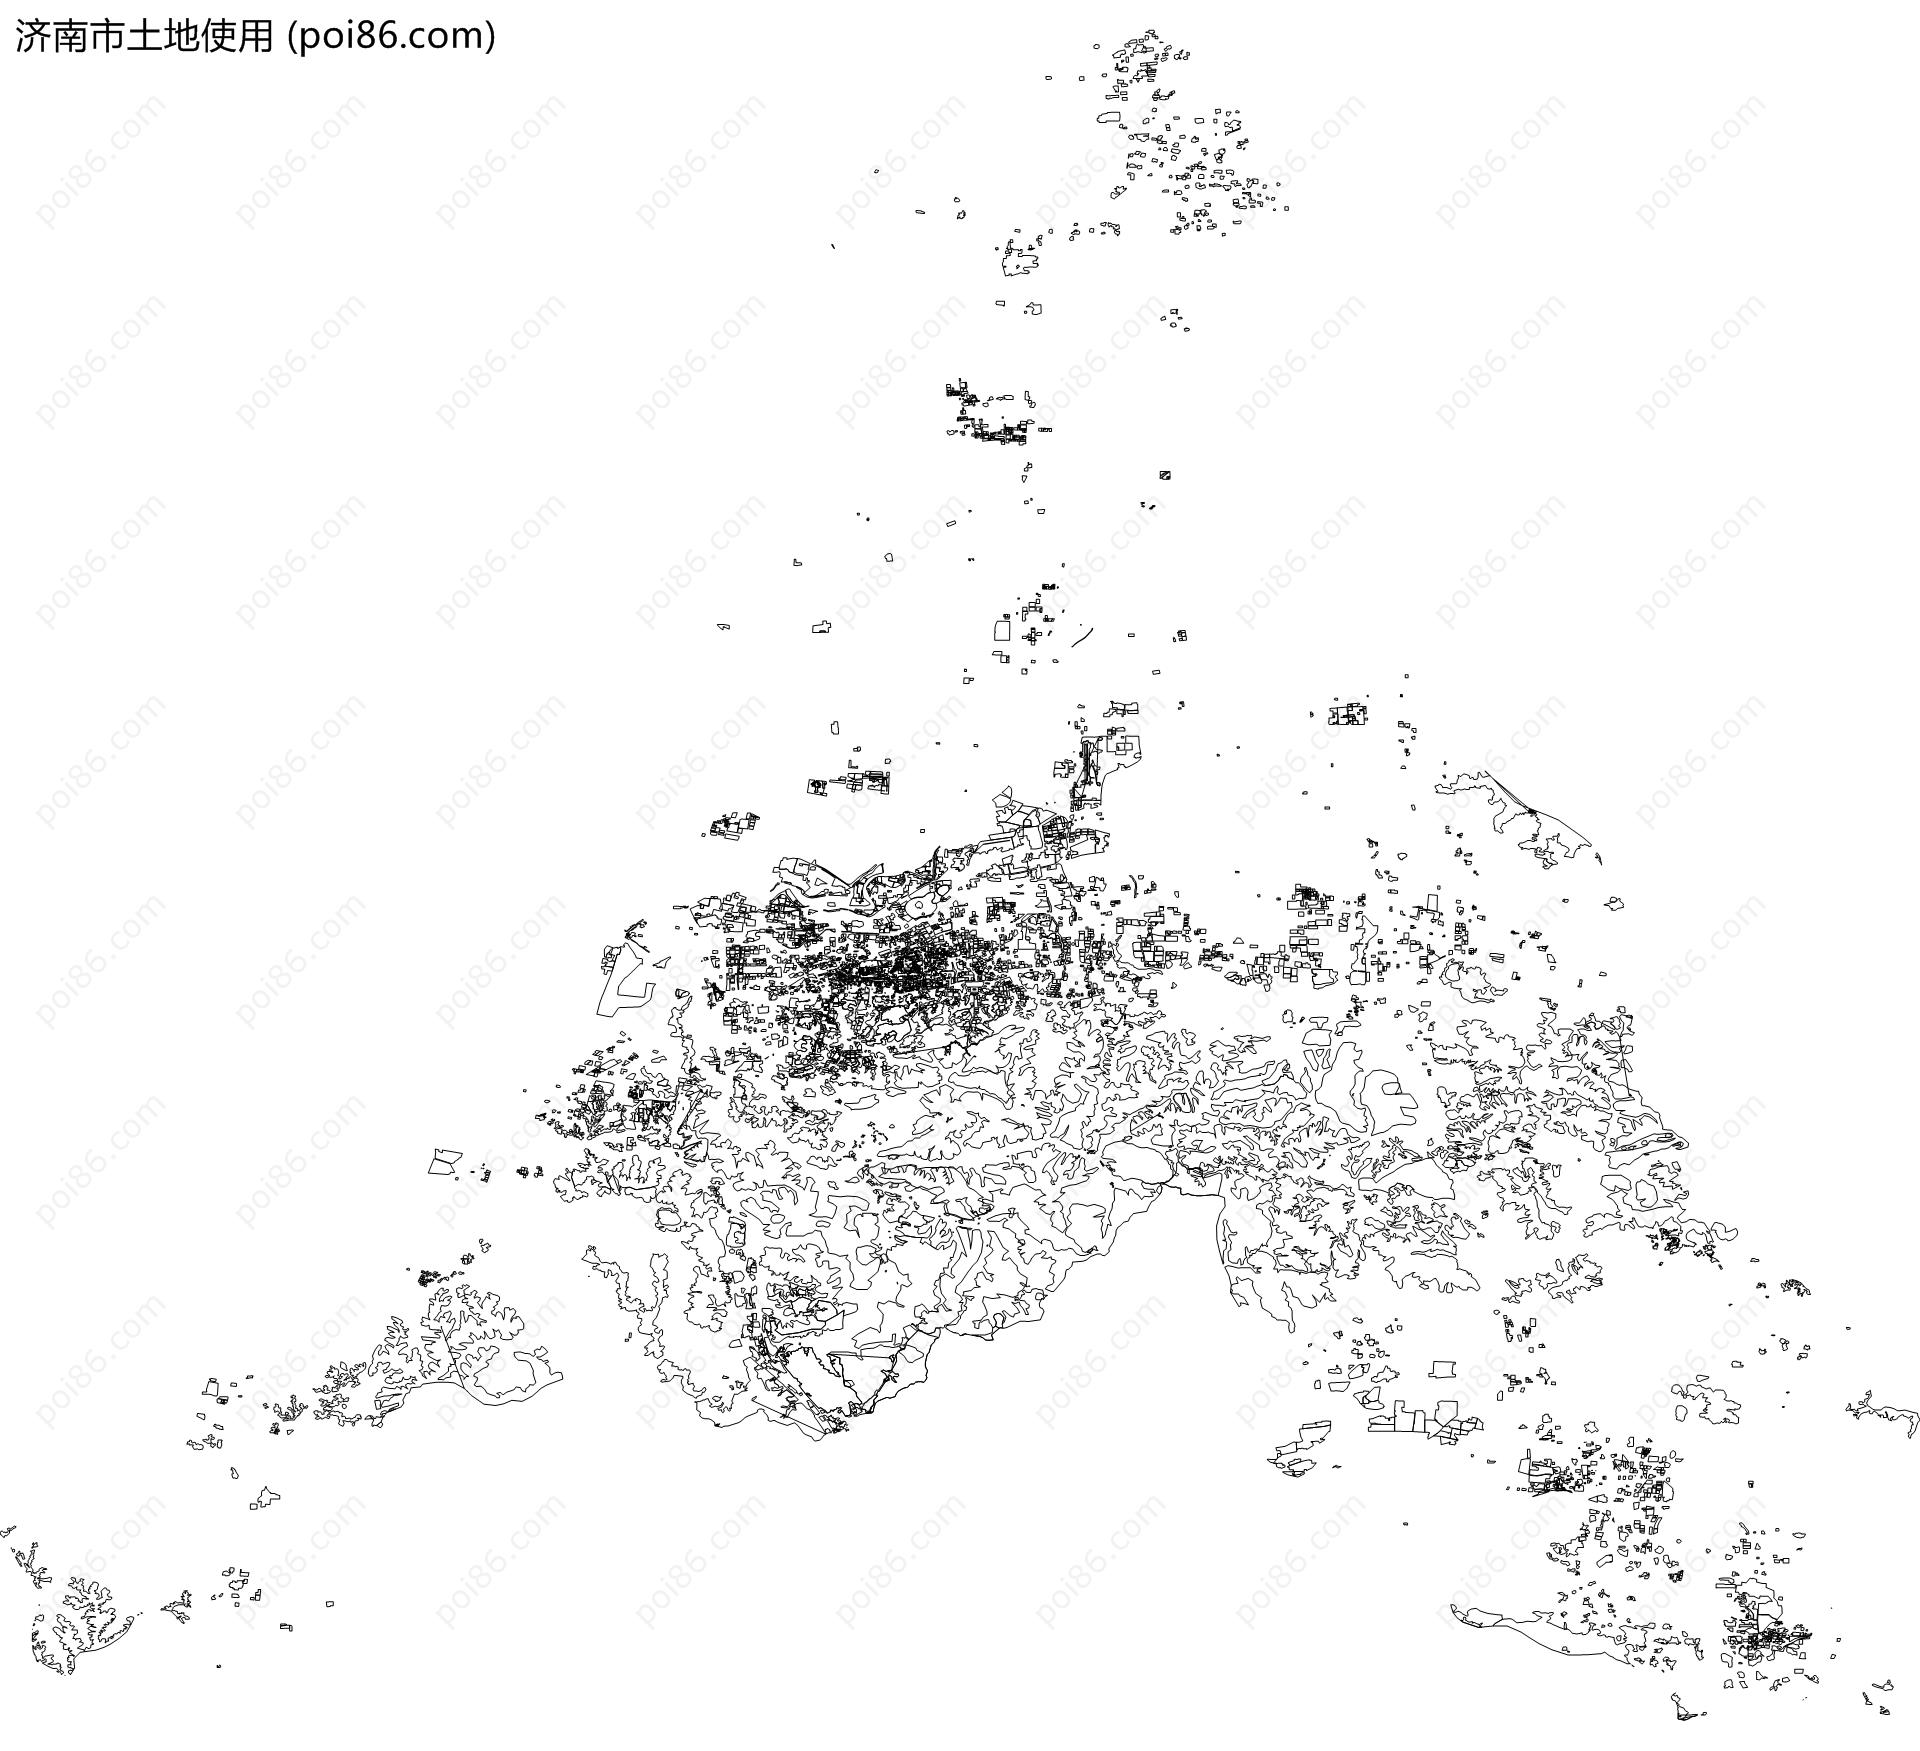 济南市土地使用地图